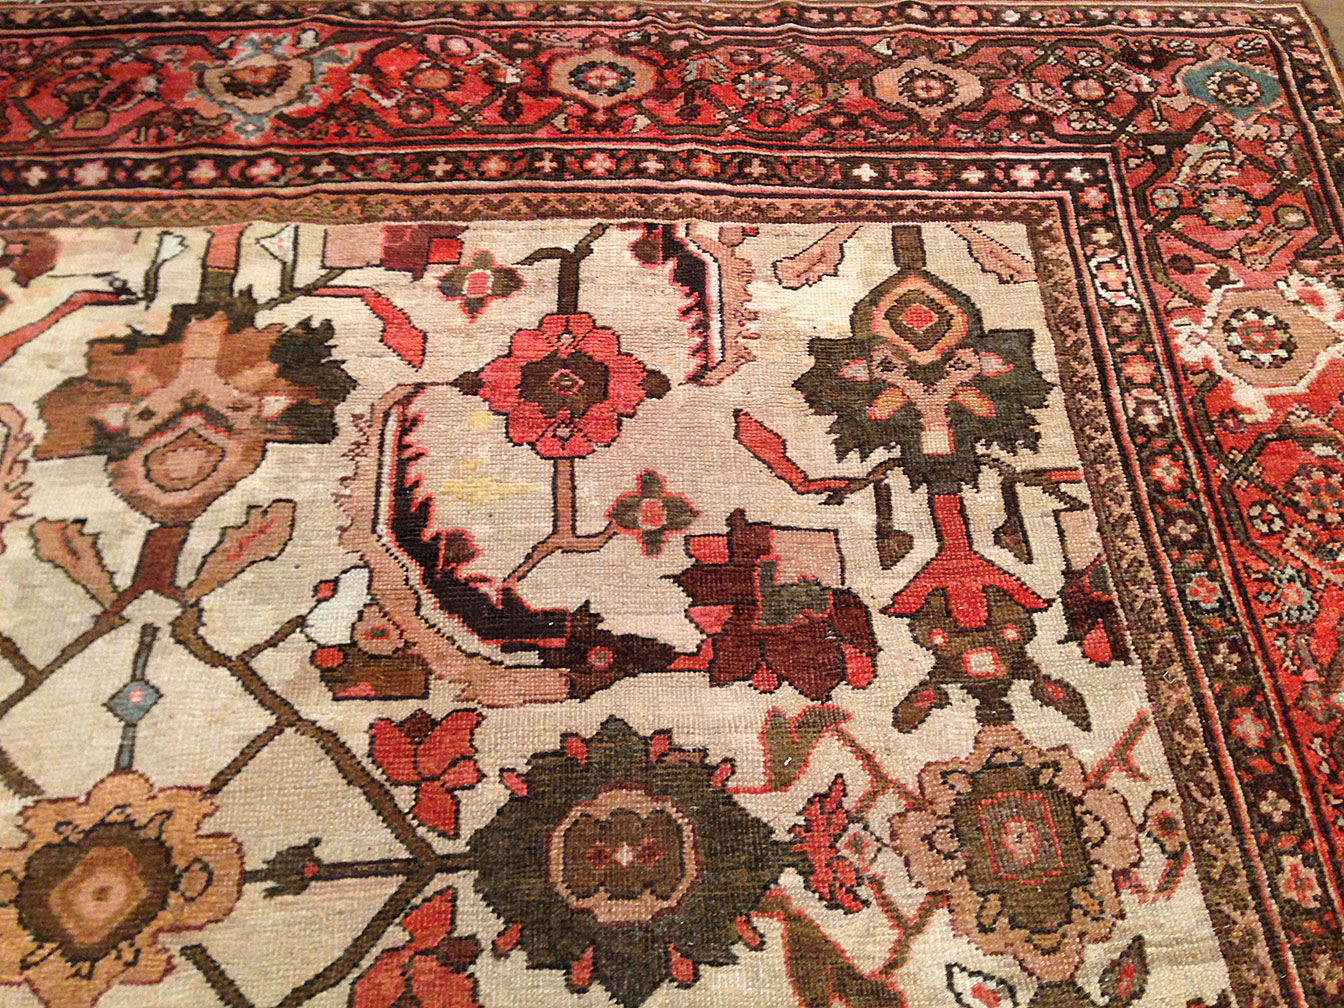 Antique mahal Carpet - # 50380